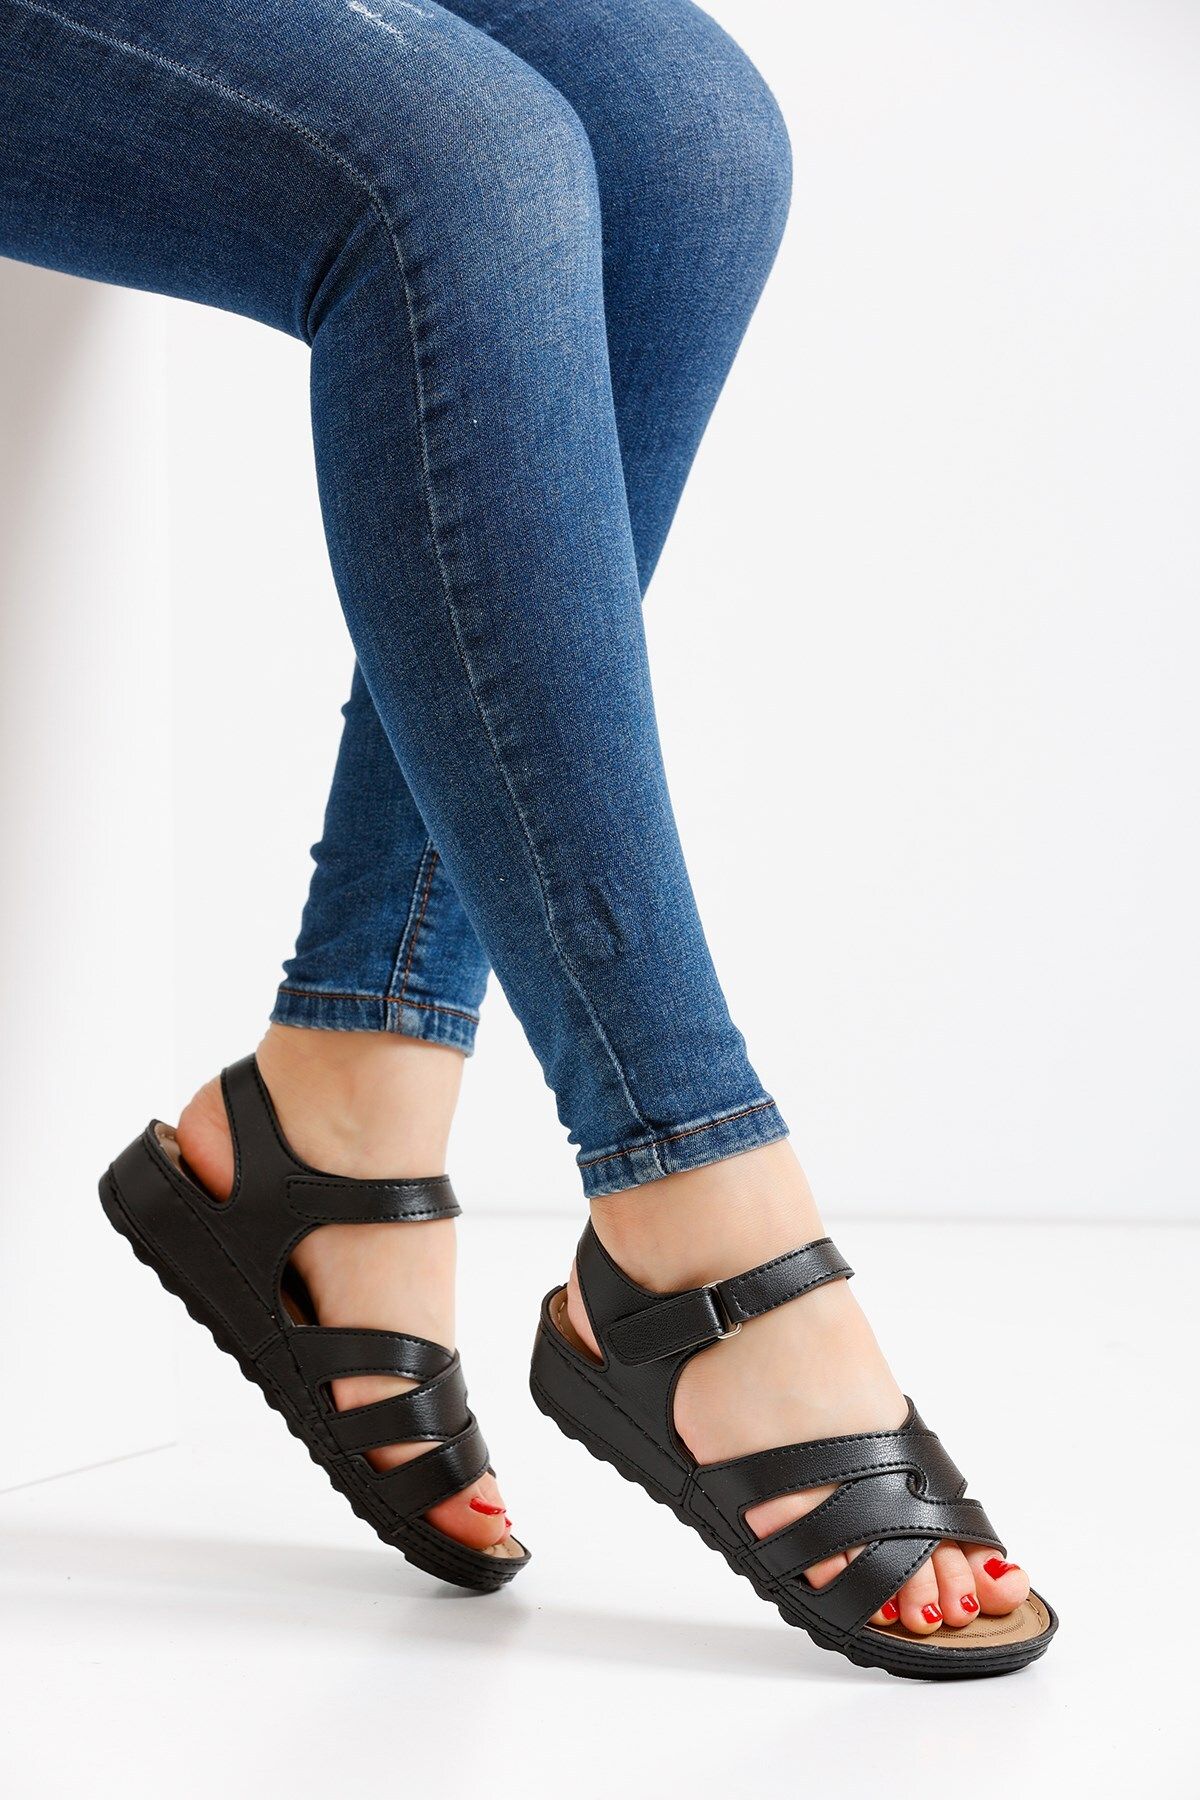 ALTUNTAŞ Kadın - Kız - Anne Cırt Cırtlı Ortapedik Soft Tbana Yazlık Sandalet Modeli - Siyah